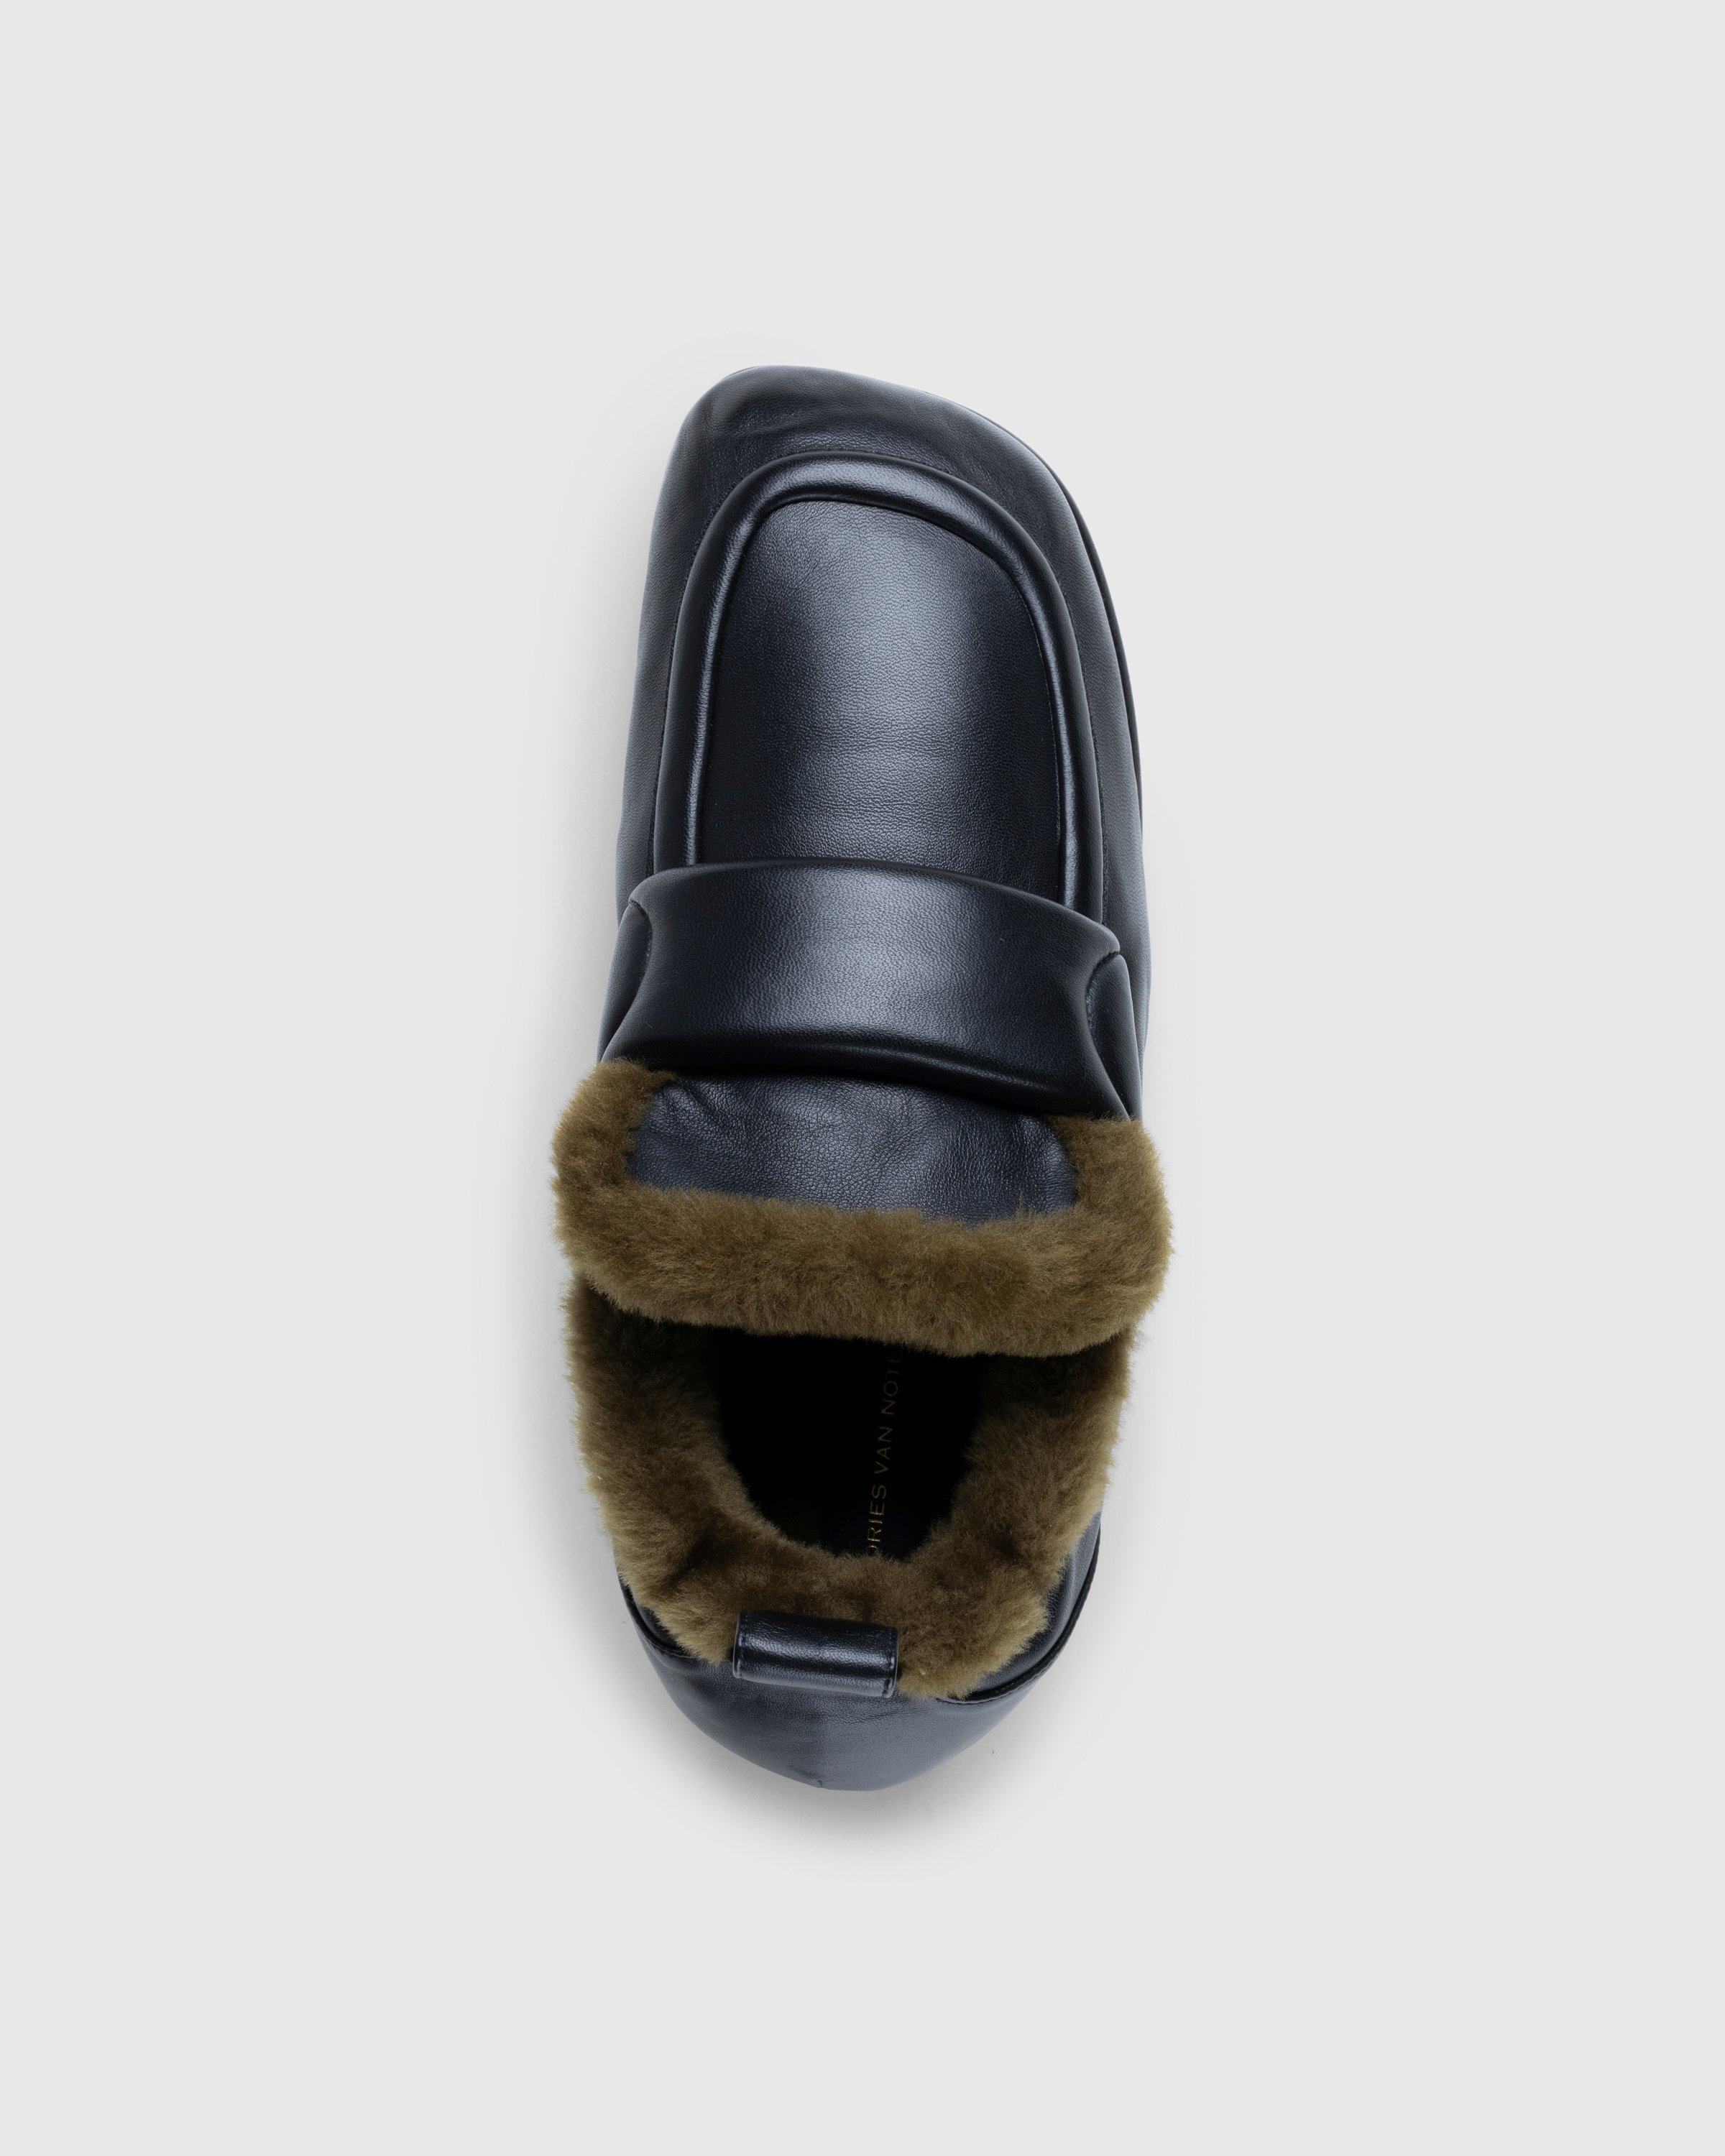 Dries van Noten - Padded Faux Fur Loafers Black - Footwear - Black - Image 5